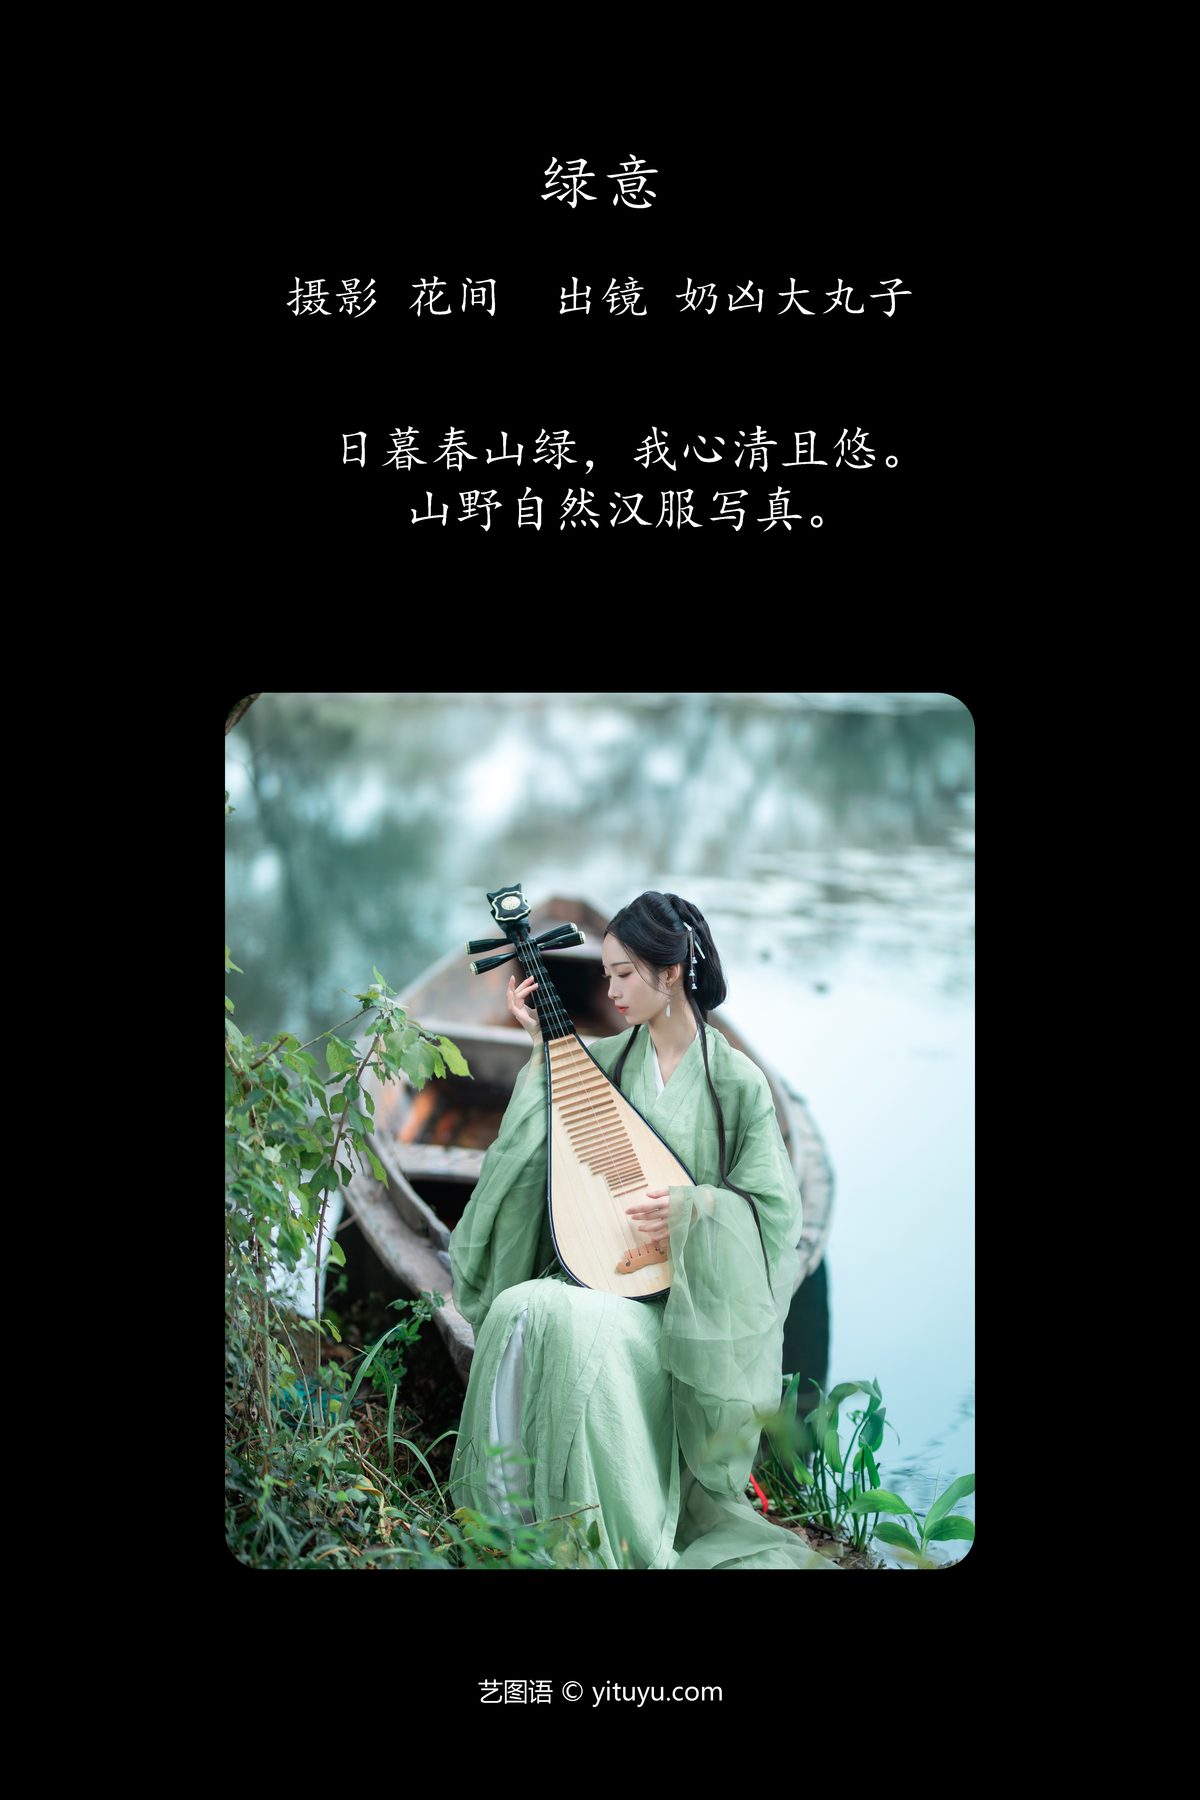 YiTuYu艺图语 Vol 6256 Nai Xiong Da Wan Zi 0002 8511442218.jpg